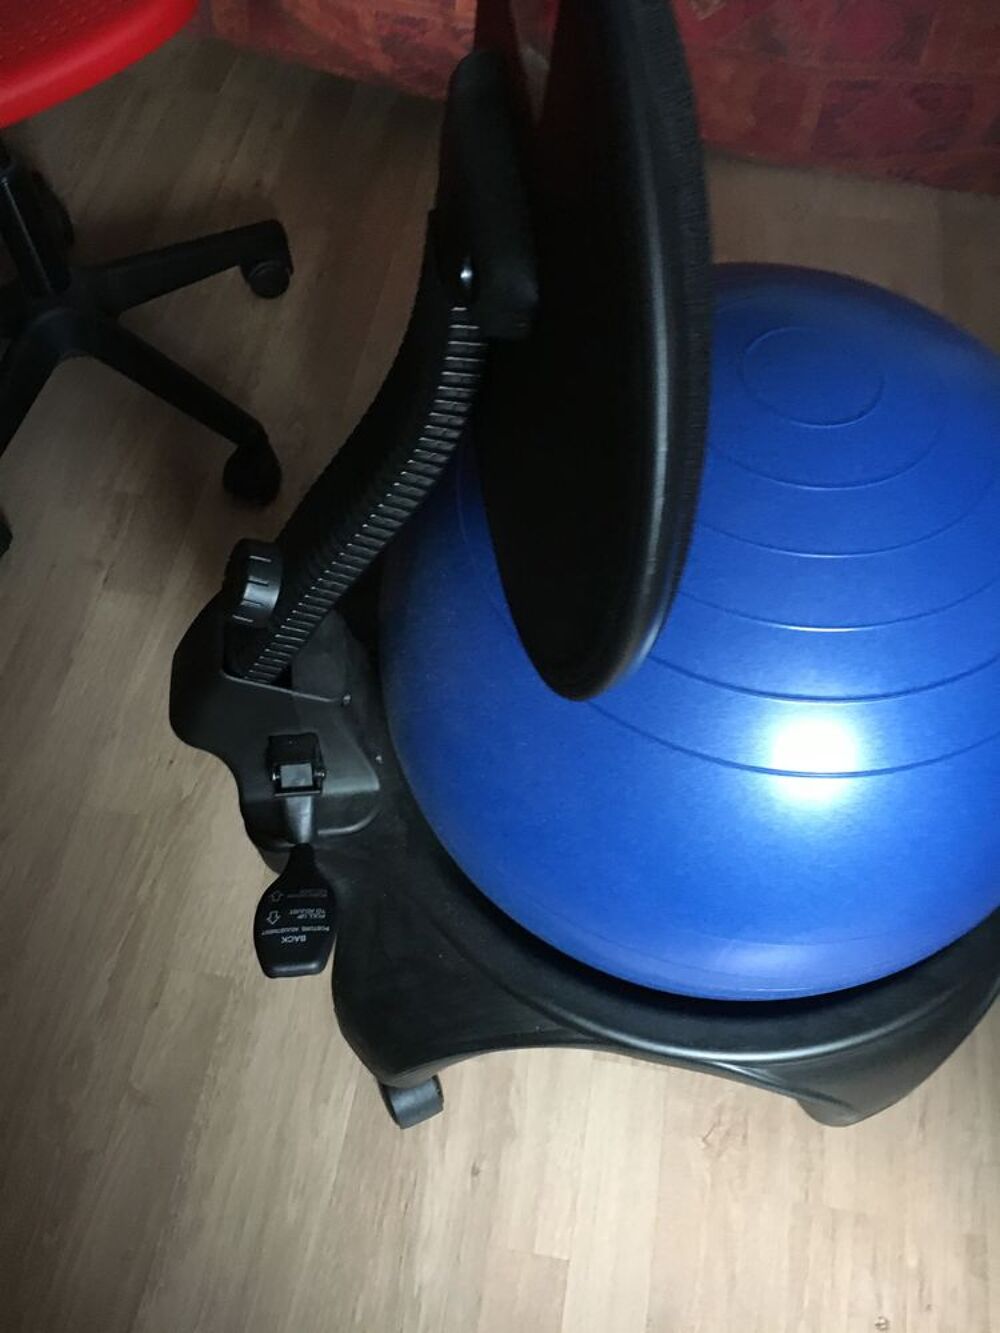 2 Tonic chair chaise ergonomique Meubles